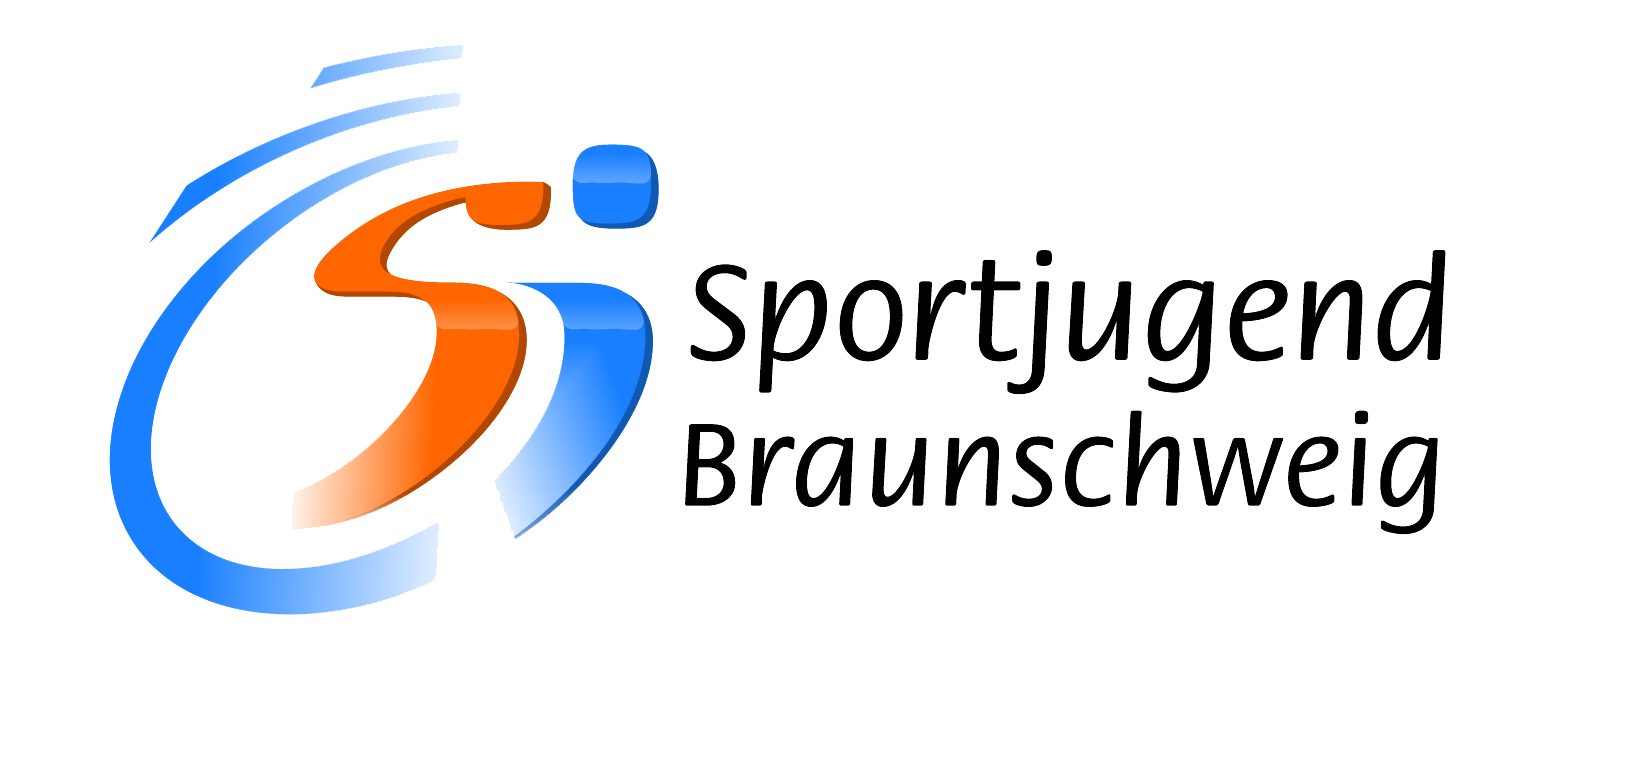 Sportjugend Braunschweig